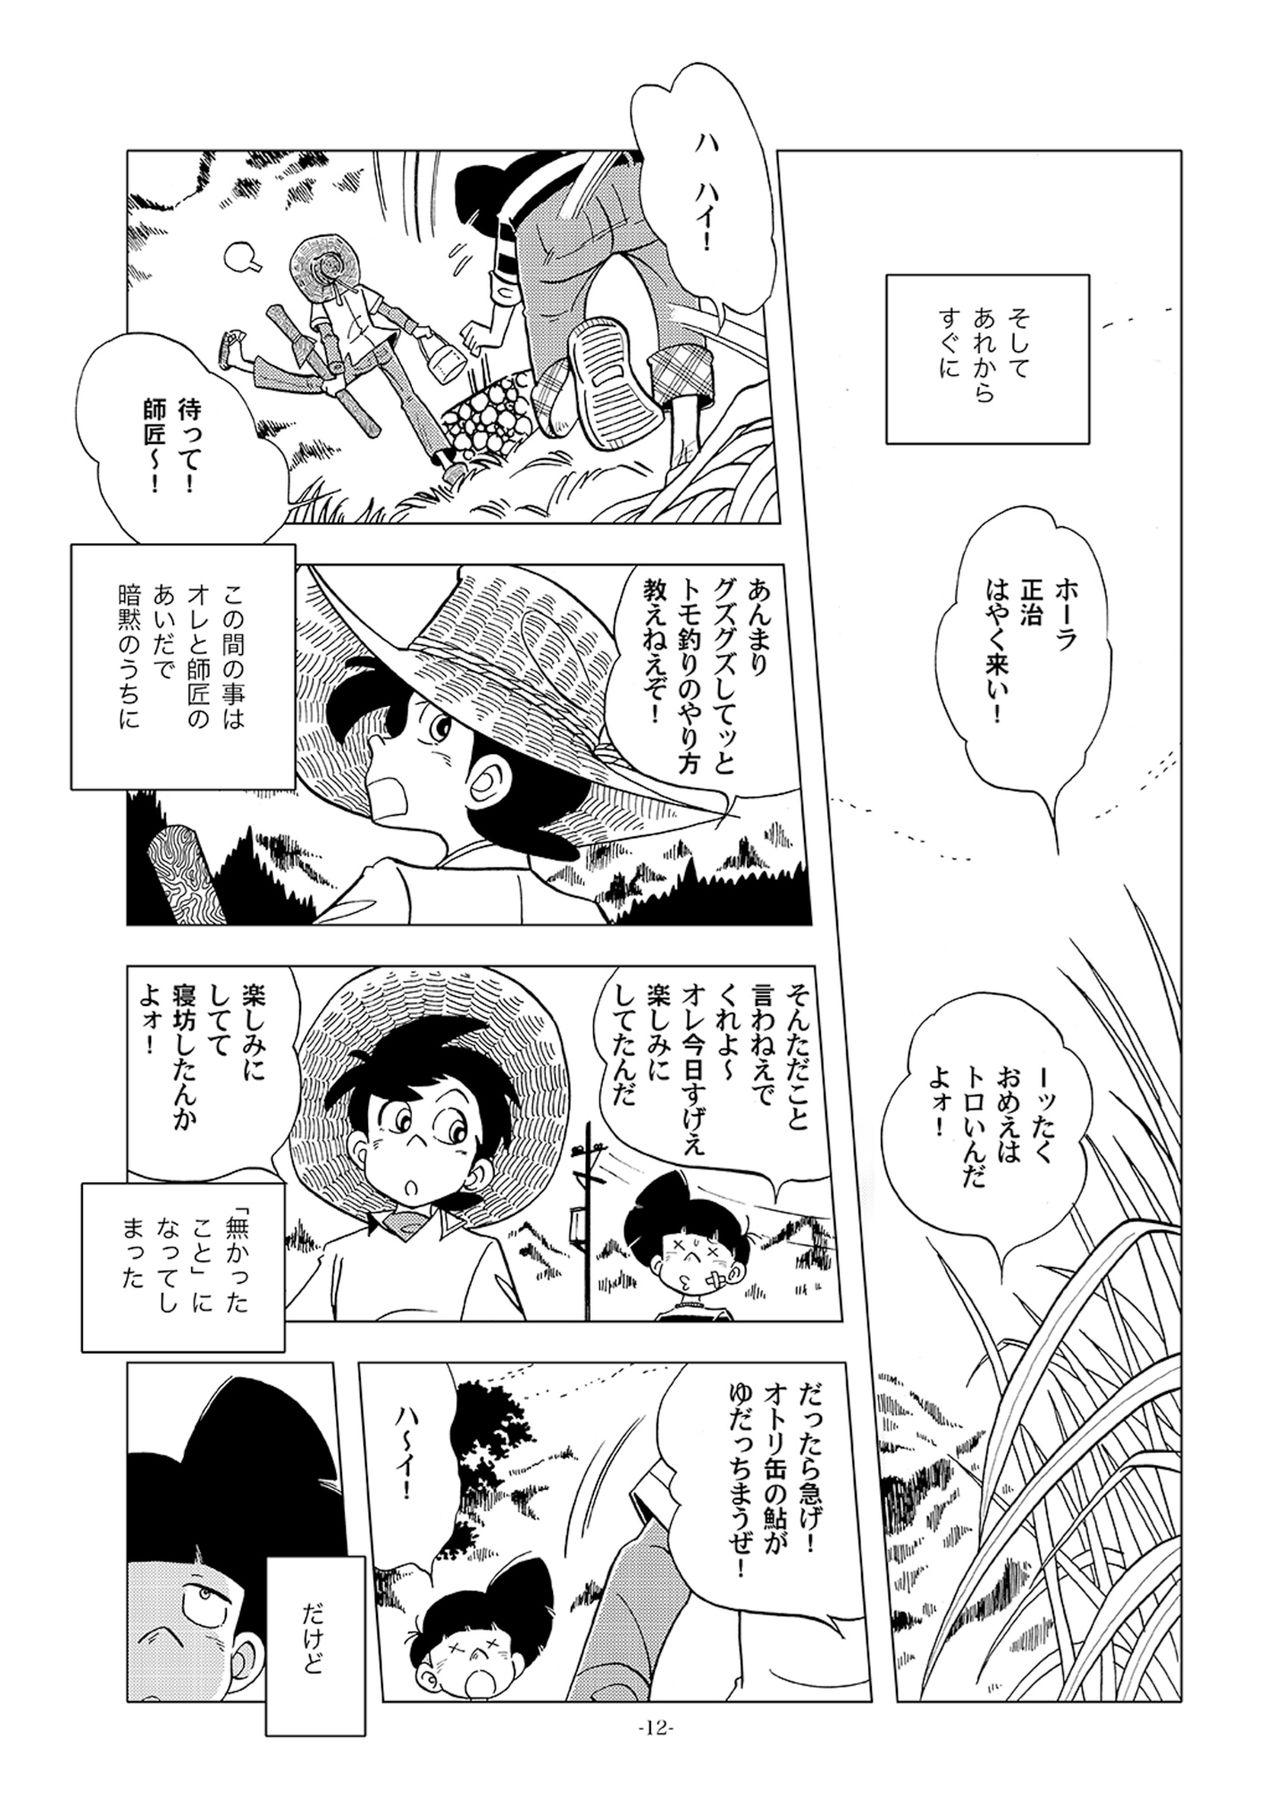 Salope Dosu ke be nōson sai roku SP - Tsurikichi sanpei High - Page 12